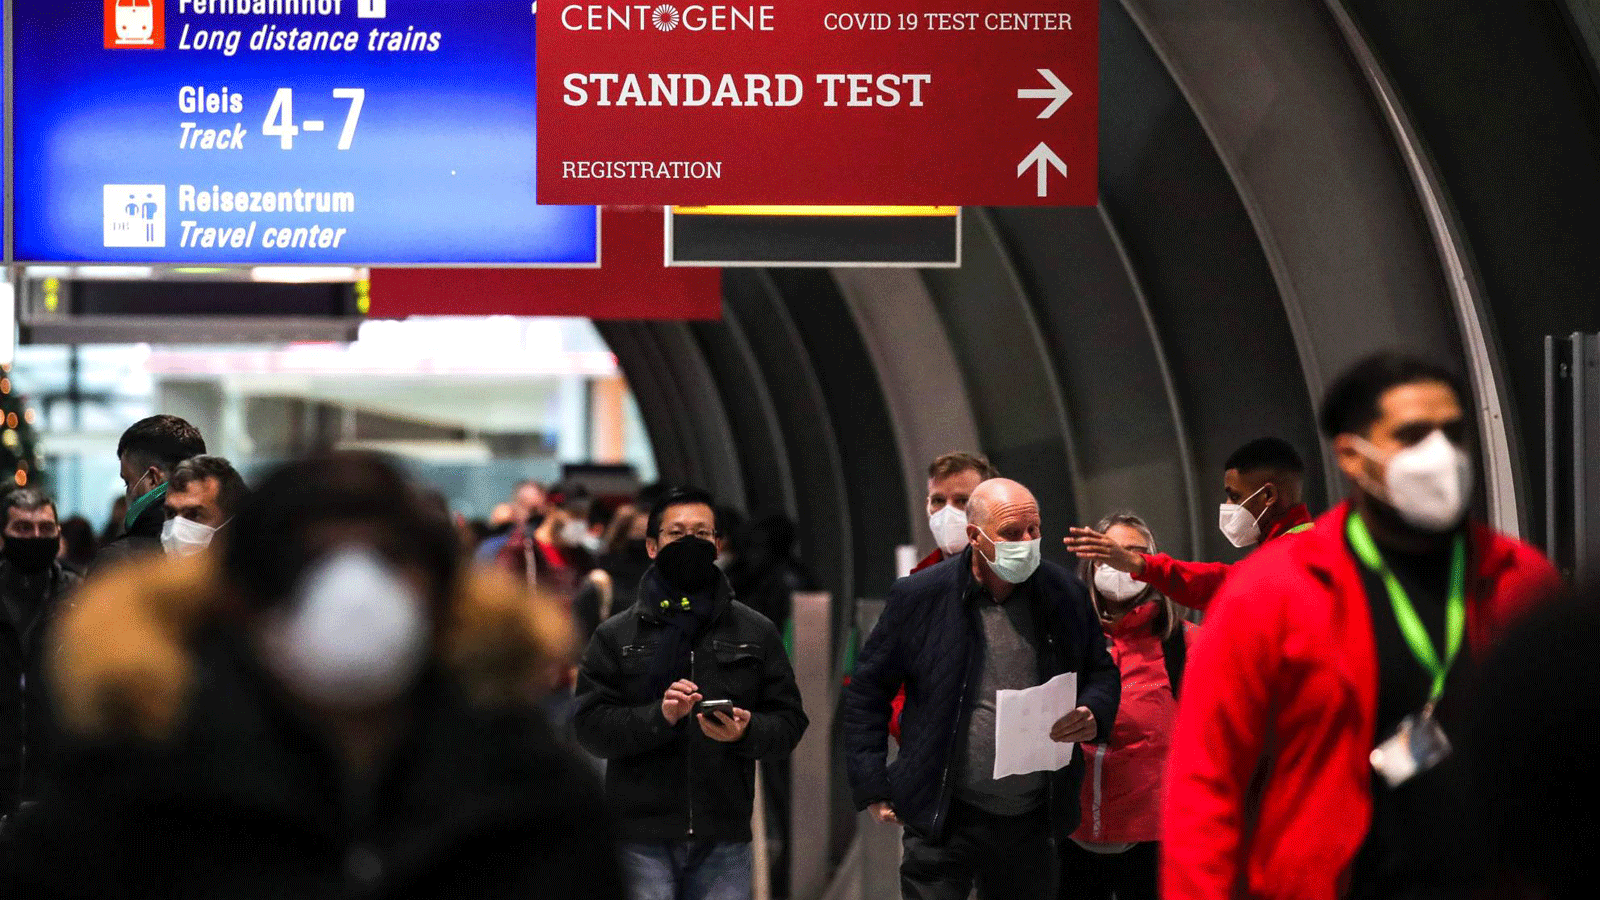 يصطف الركاب في مركز اختبار COVID-19 في مطار فرانكفورت الدولي في 19 كانون الأول/ ديسمبر 2020